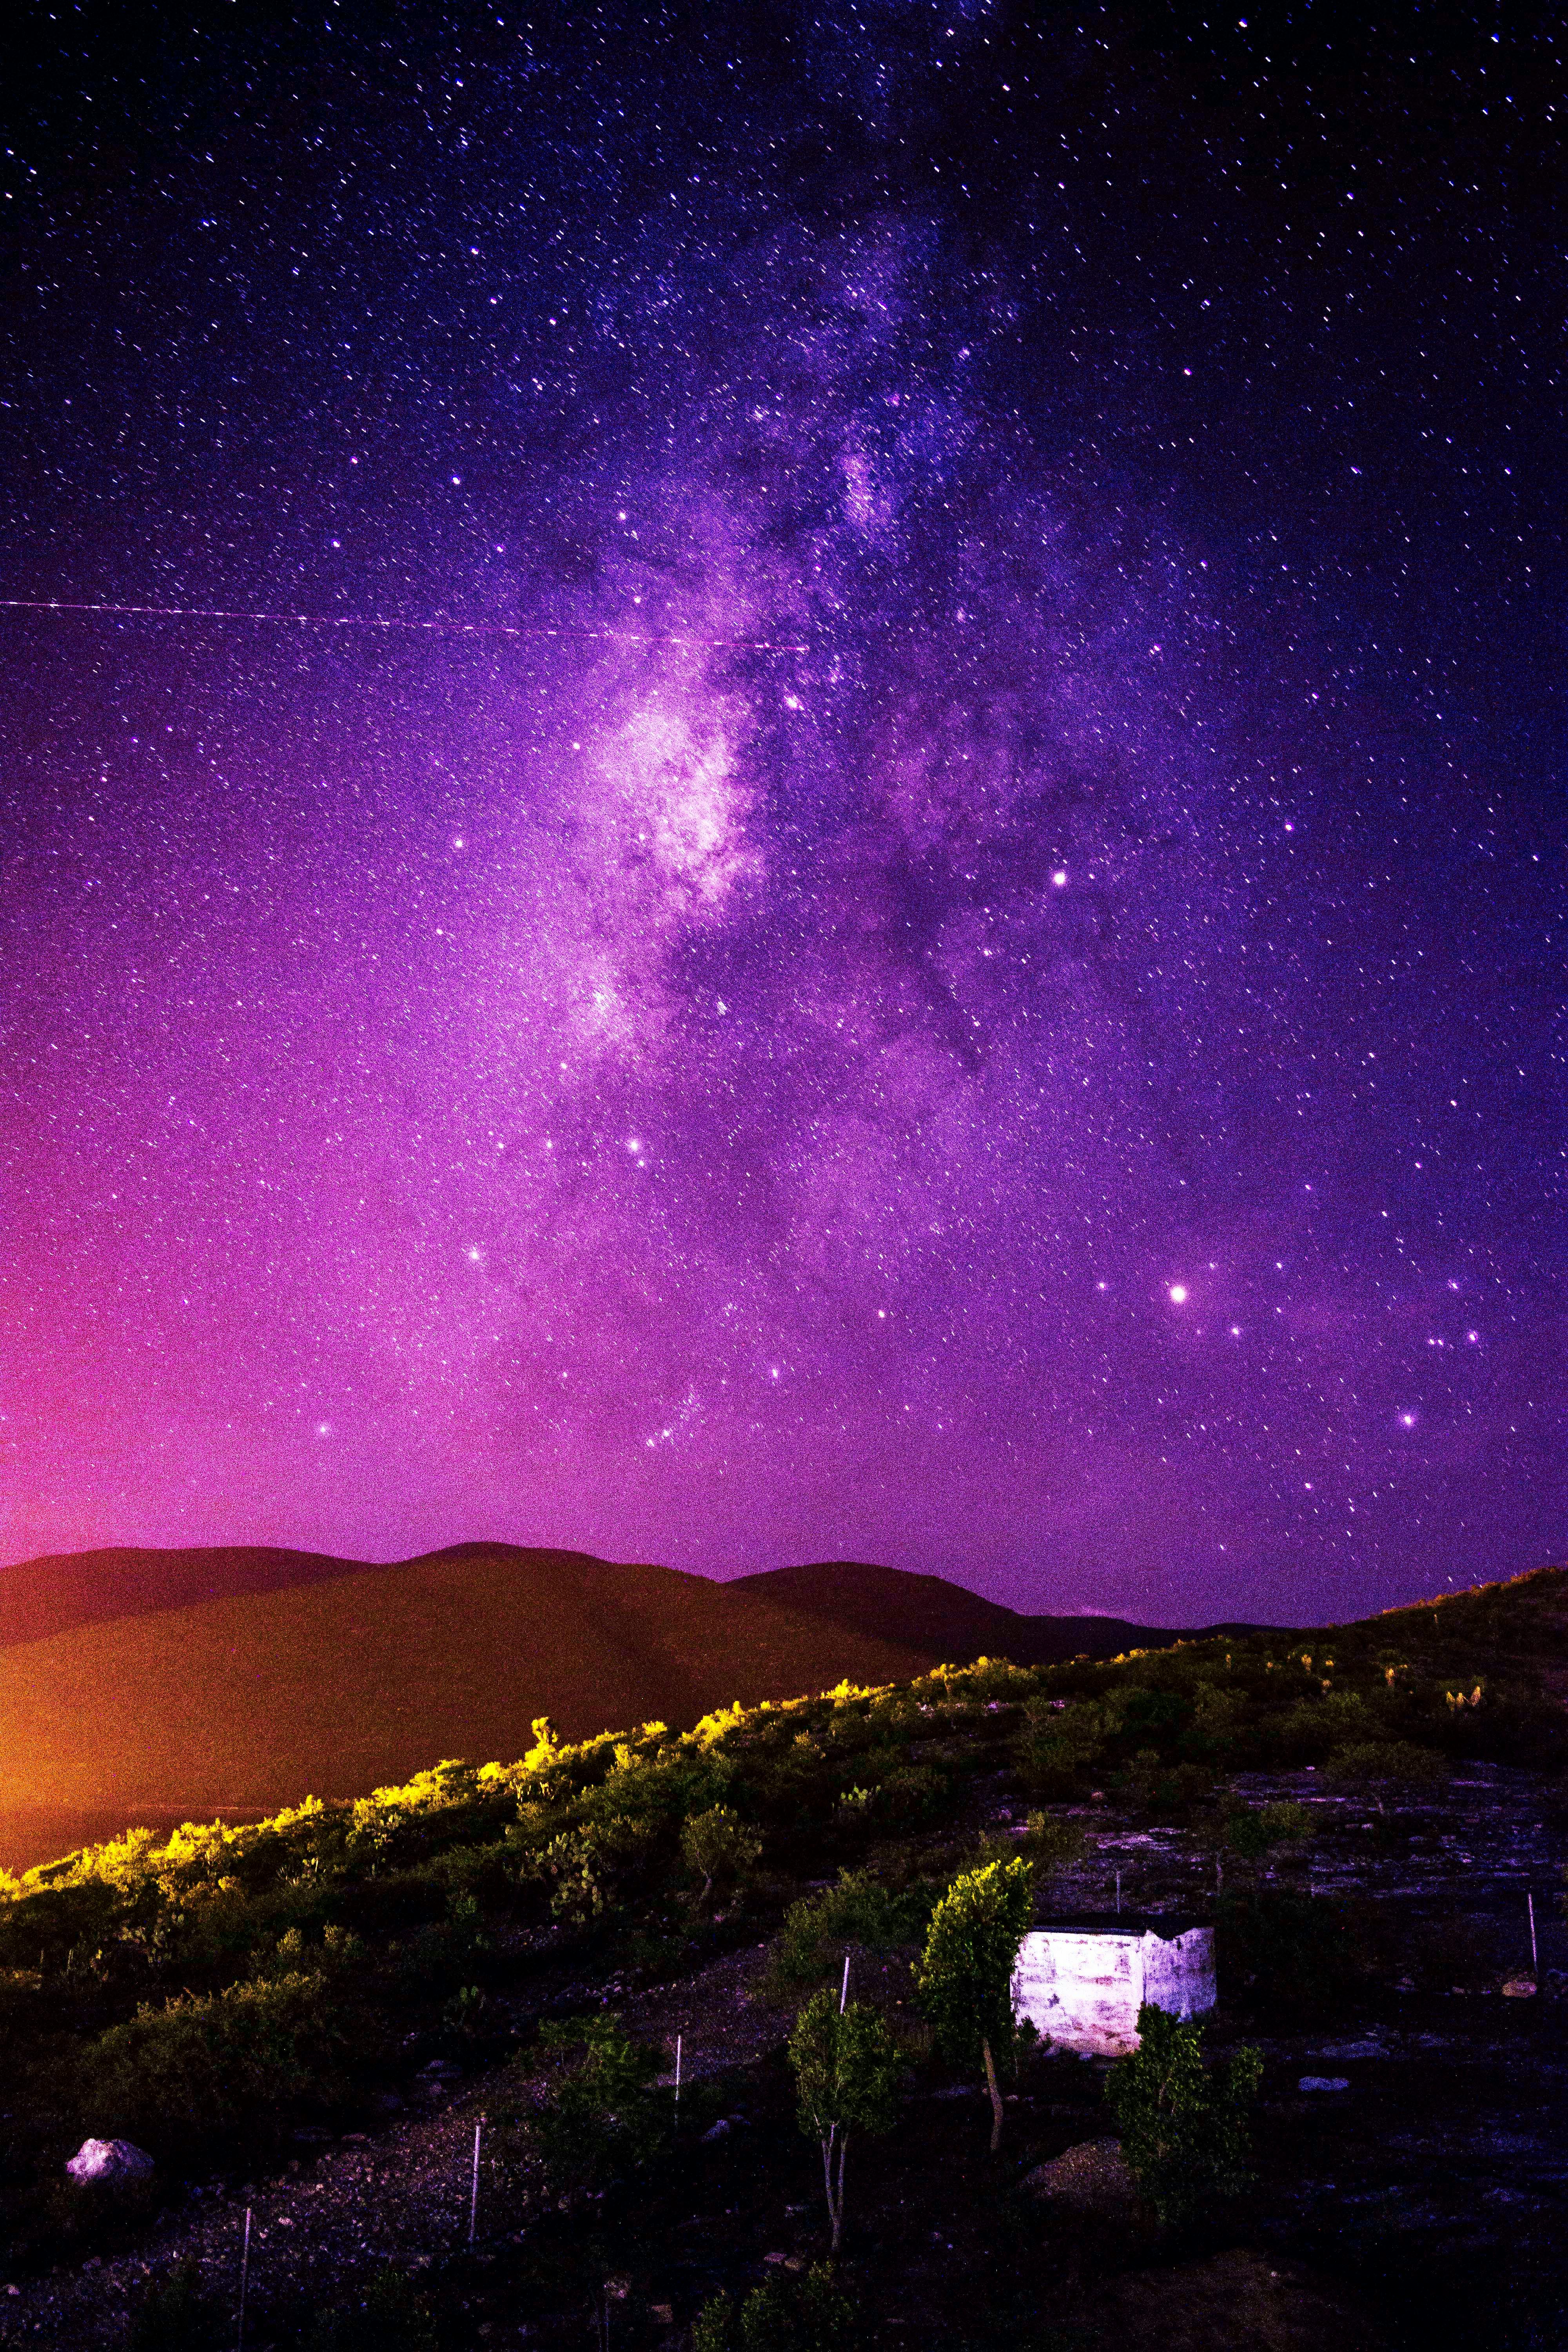 Purple Night Sky Photo · Free Stock Photo